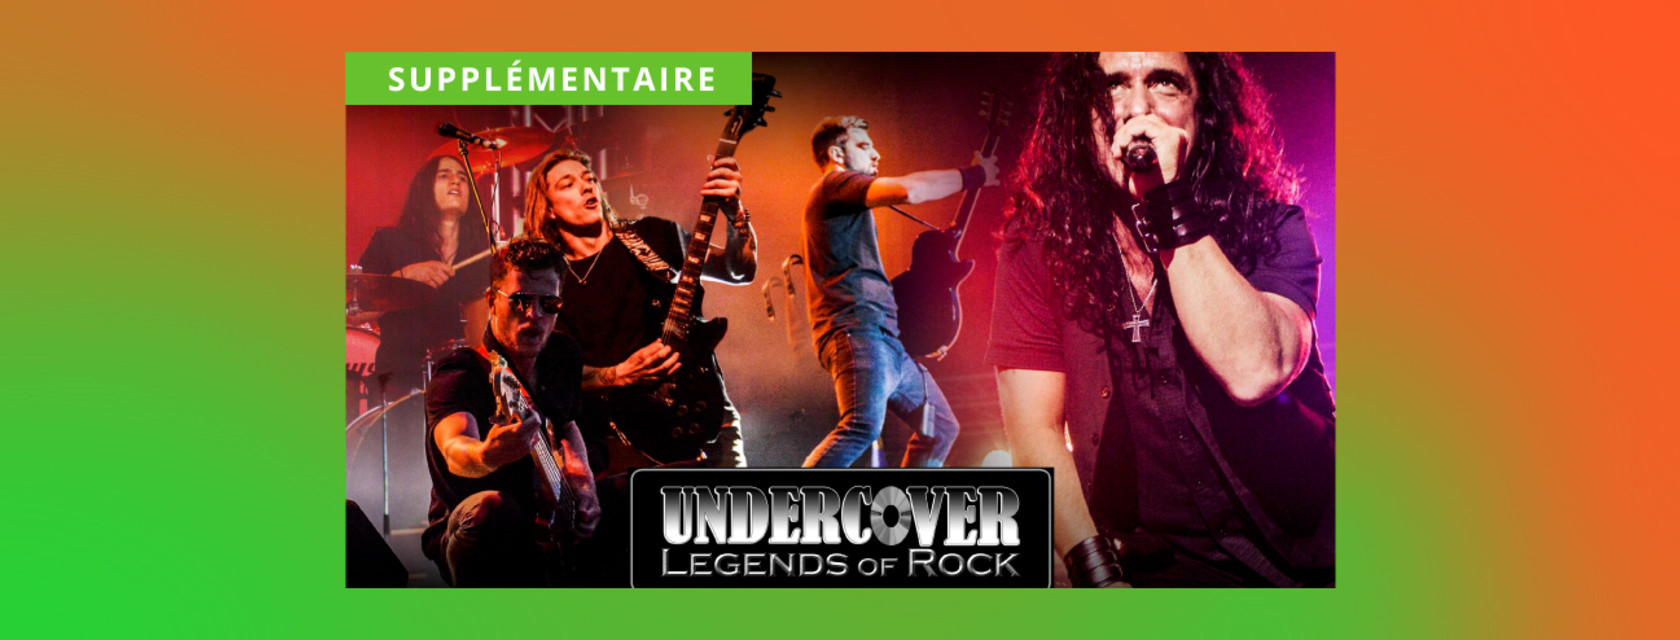 Une supplémentaire pour le groupe Undercover Legends of Rock